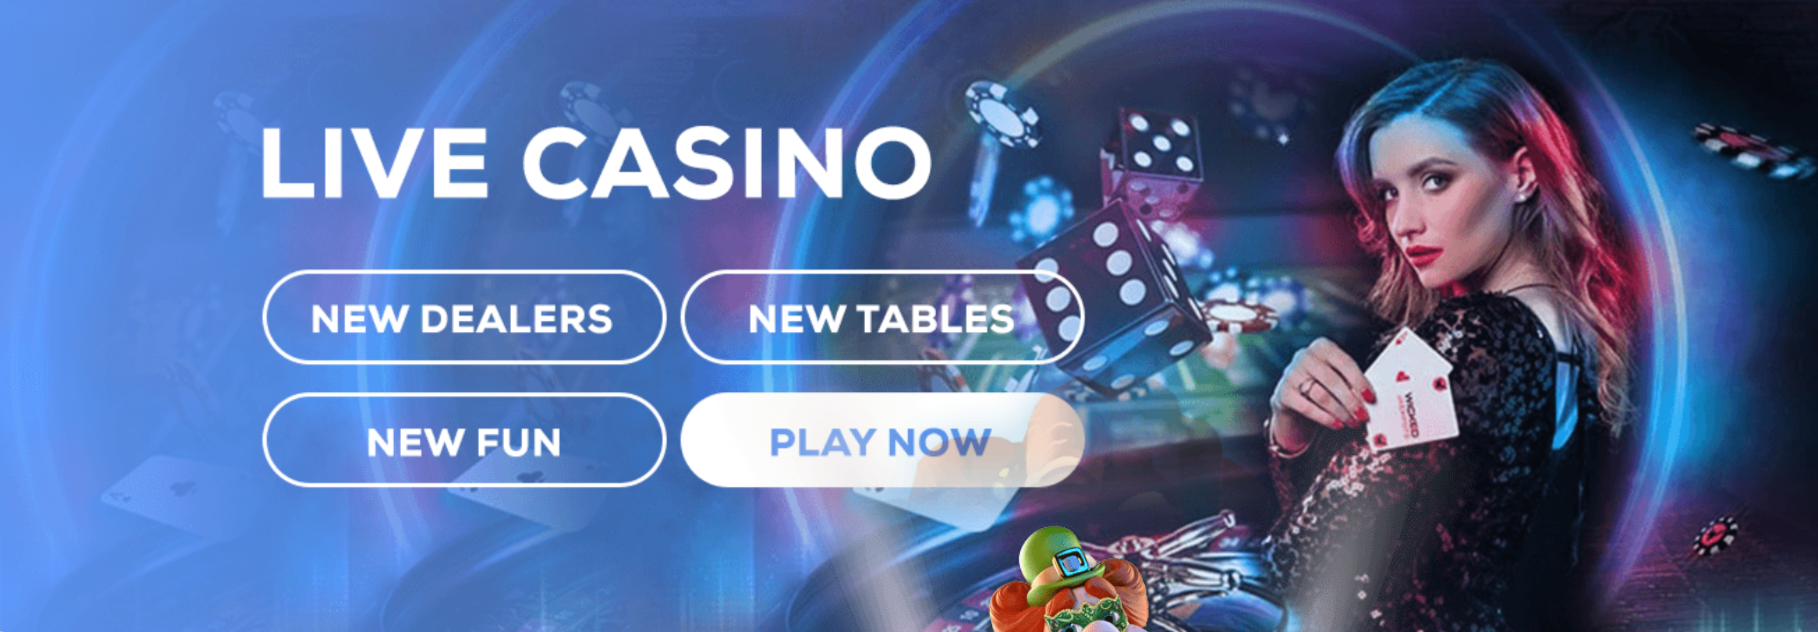 SEK valuta casino online 271177